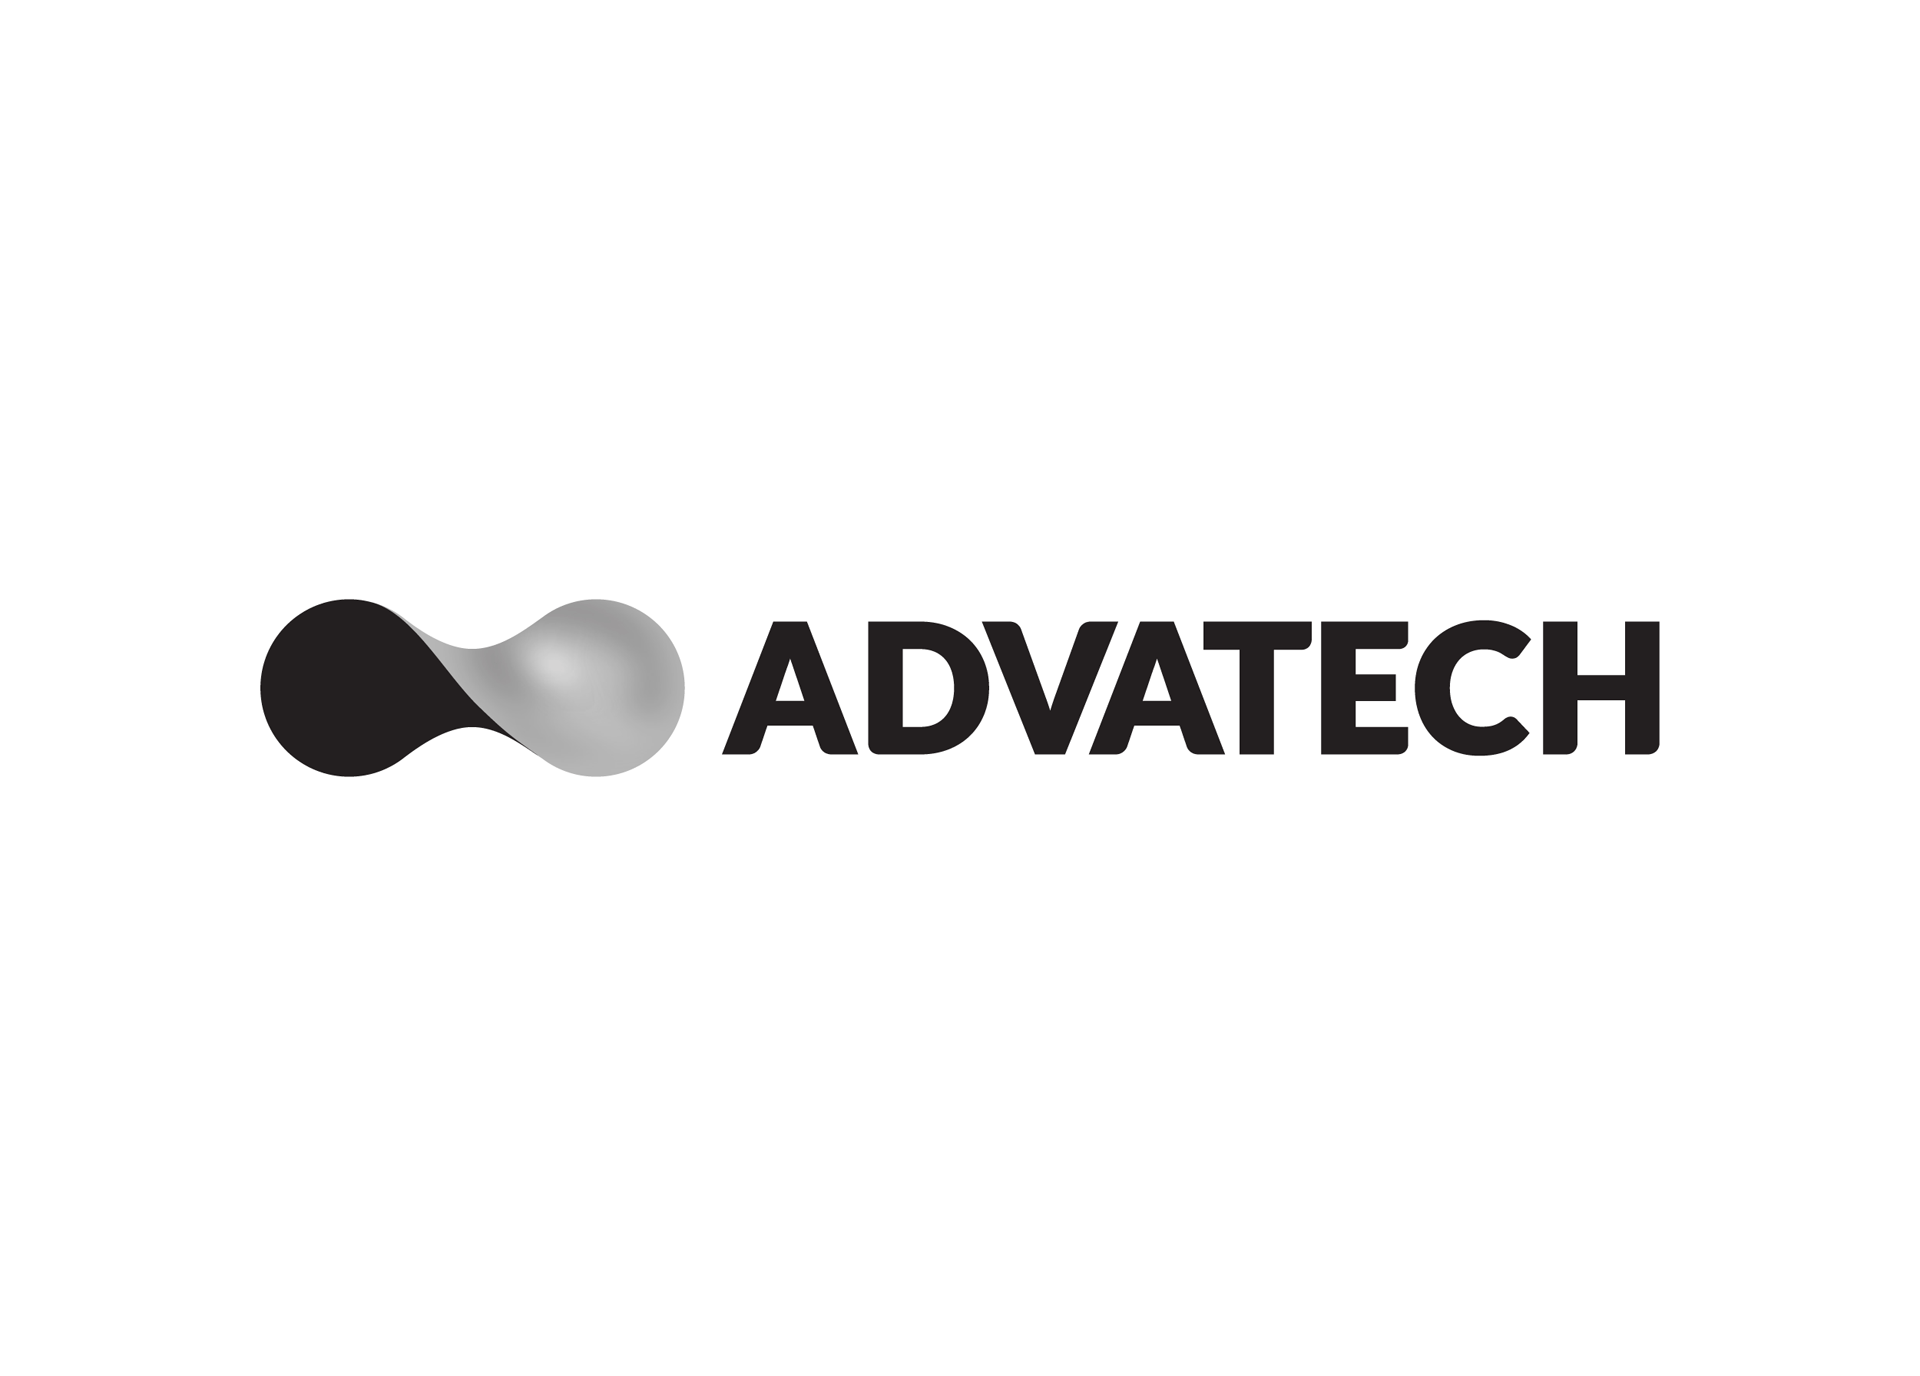 Advatech brand design